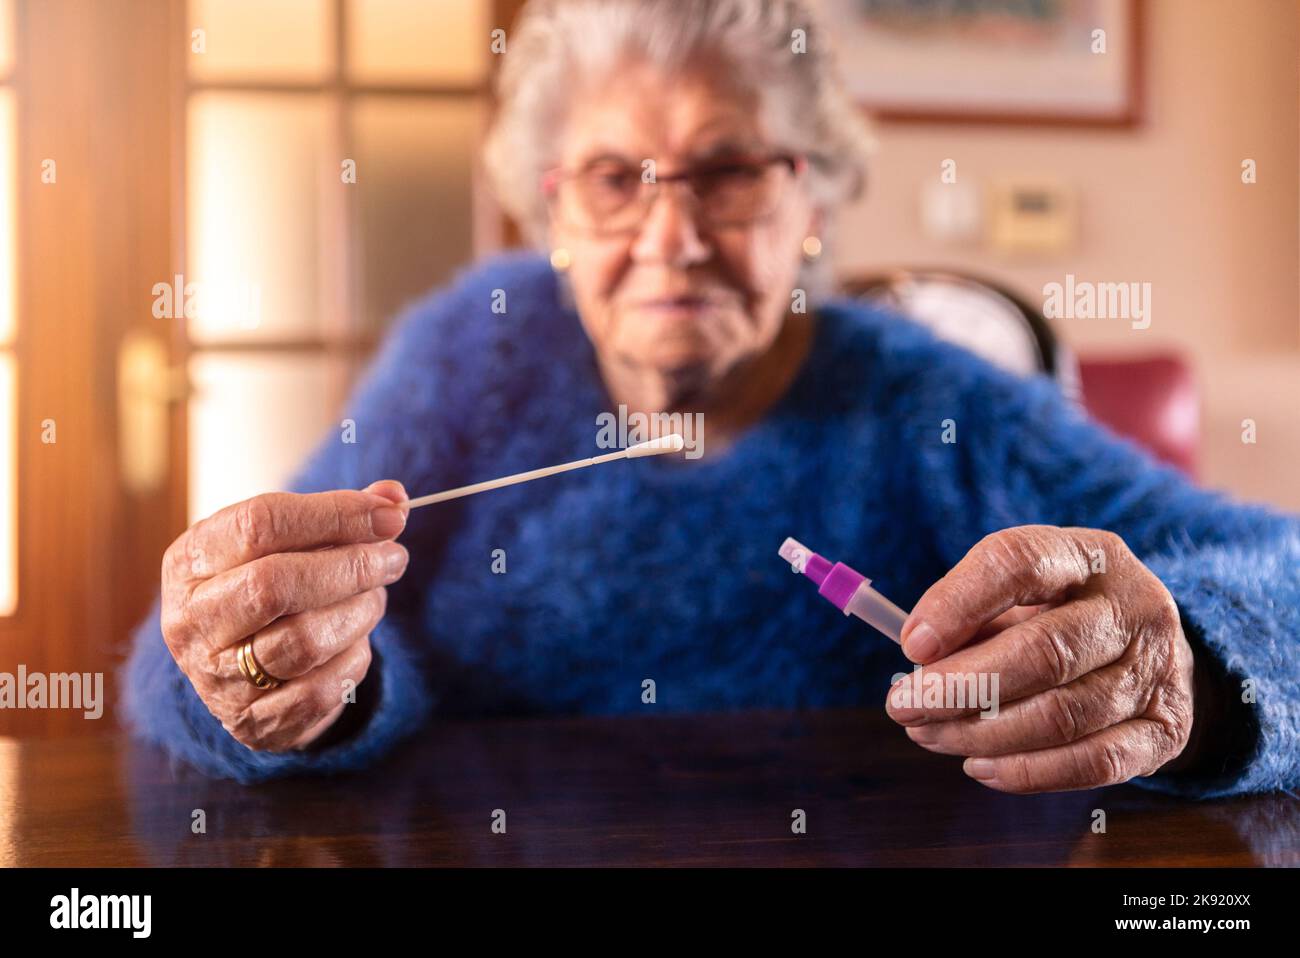 Grand-mère caucasien tenant un coton-tige pour le nez afin de recueillir un éventuel échantillon positif de COVID-19 pendant la pandémie. Grand-mère faire le test d'antigène pro Banque D'Images